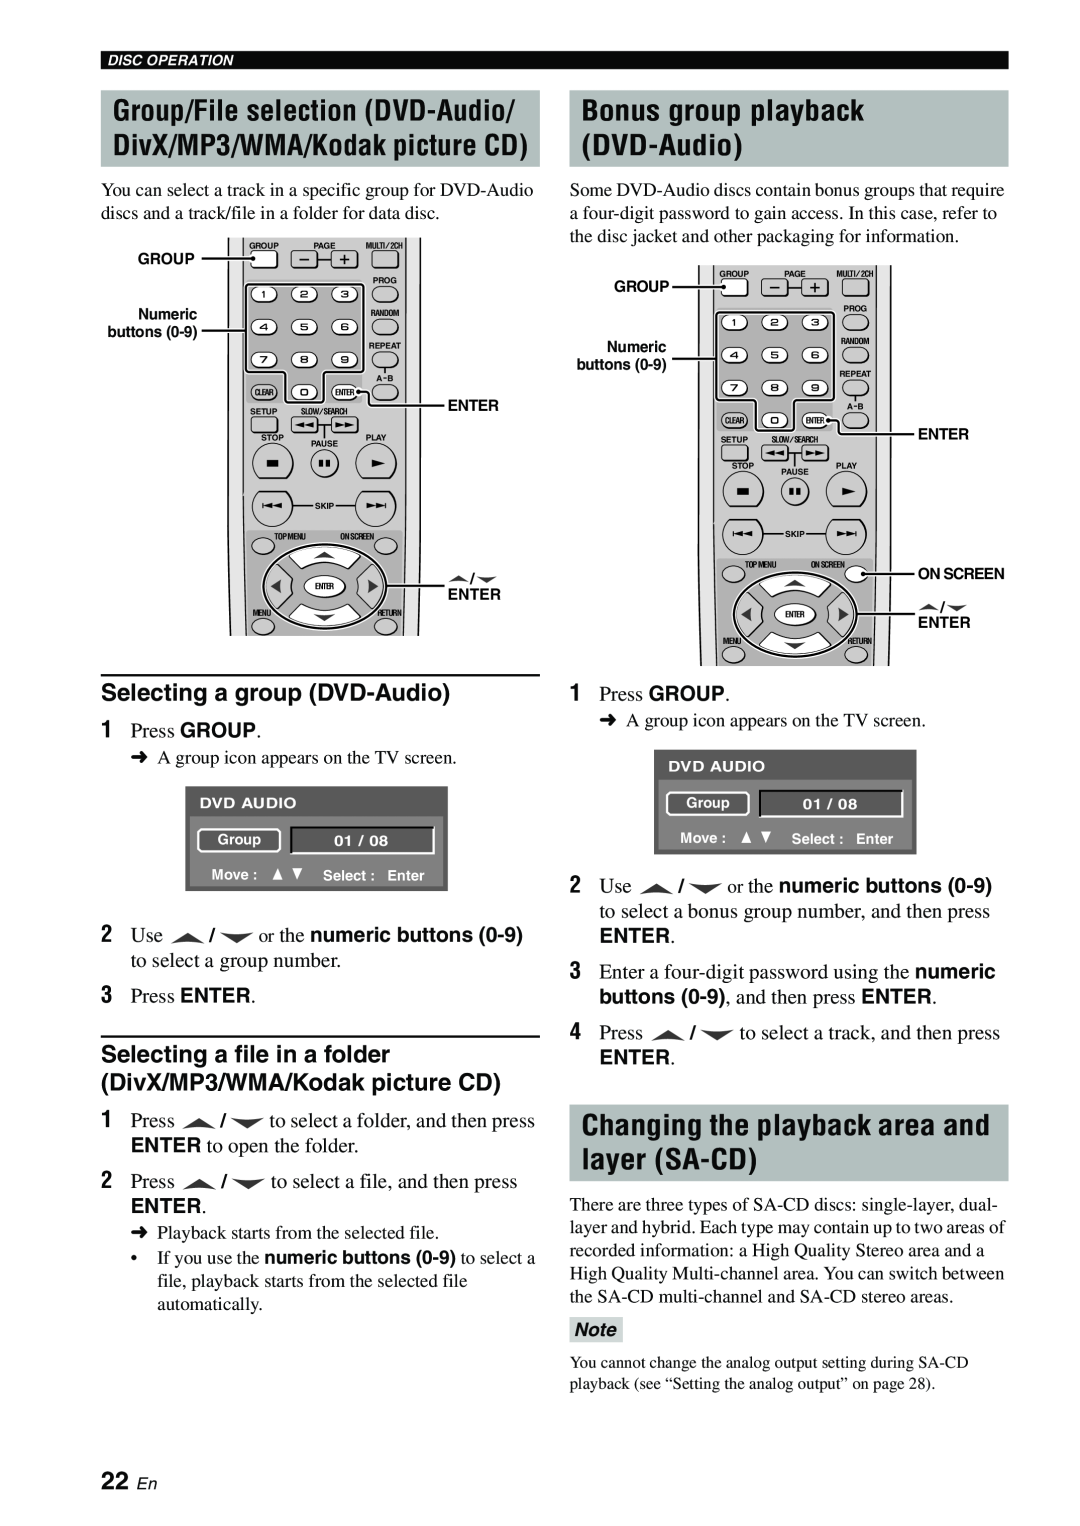 Yamaha DVD-S1700B manual Changing the playback area and layer SA-CD, Bonus group playback DVD-Audio, 22 En, Enter 